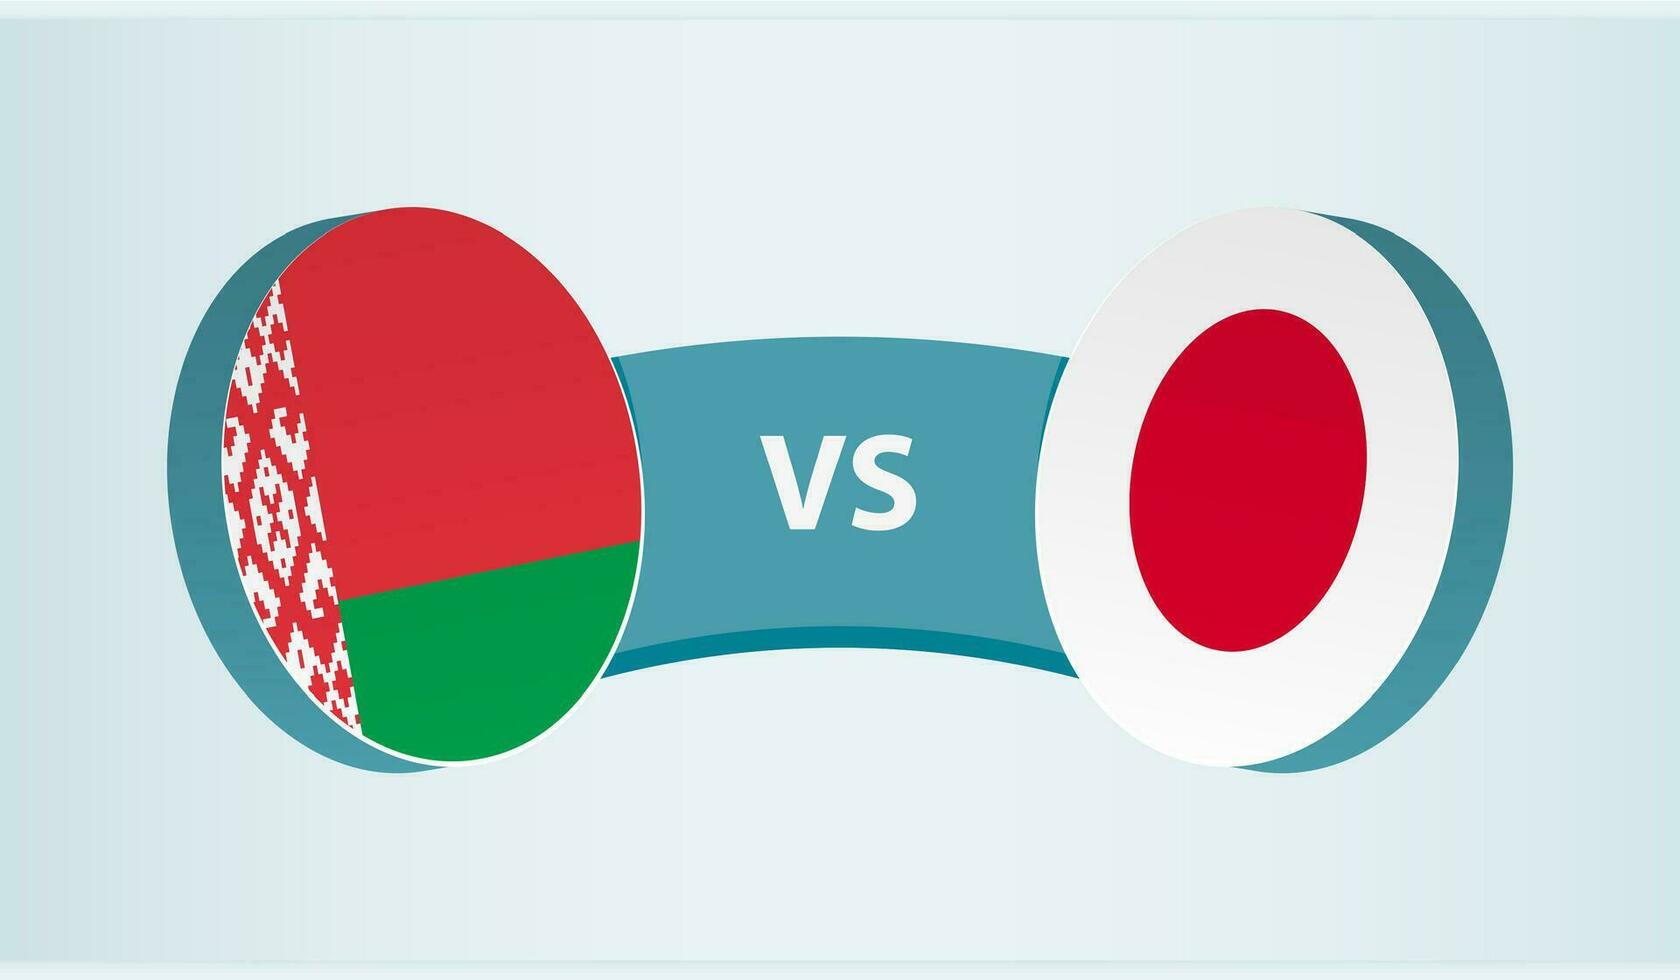 Vitryssland mot Japan, team sporter konkurrens begrepp. vektor